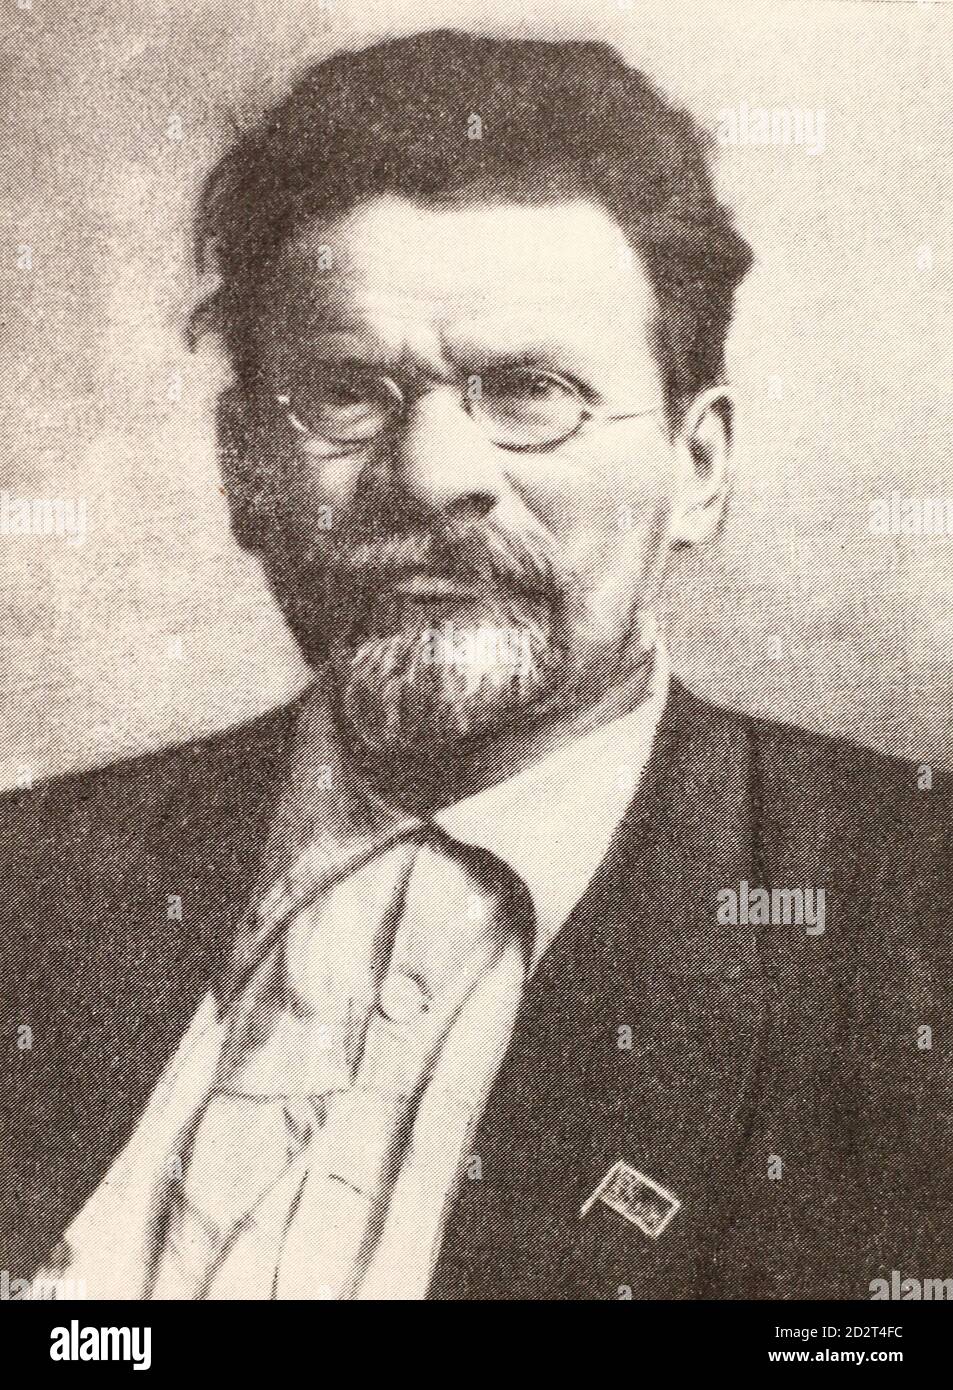 Mikhail Kalinin in 1922. Stock Photo